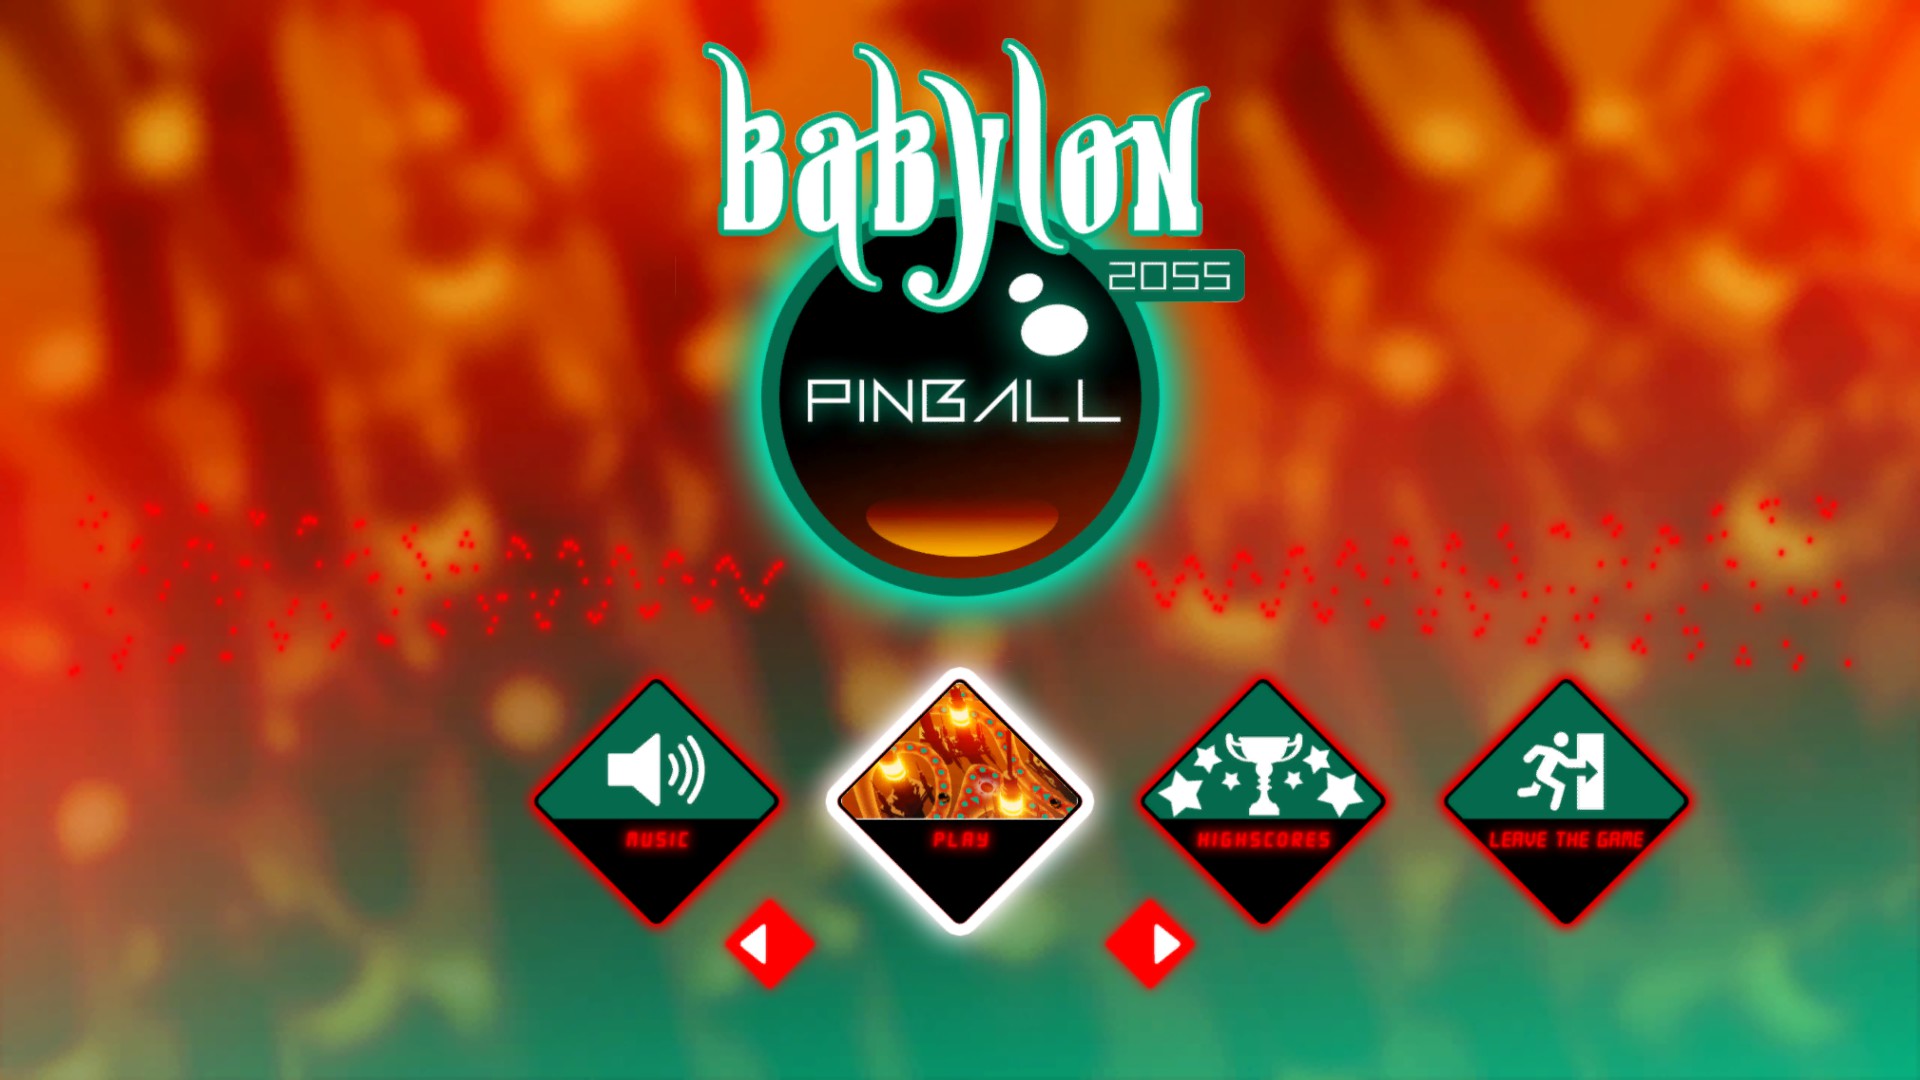 Babylon 2055 Pinball screenshot